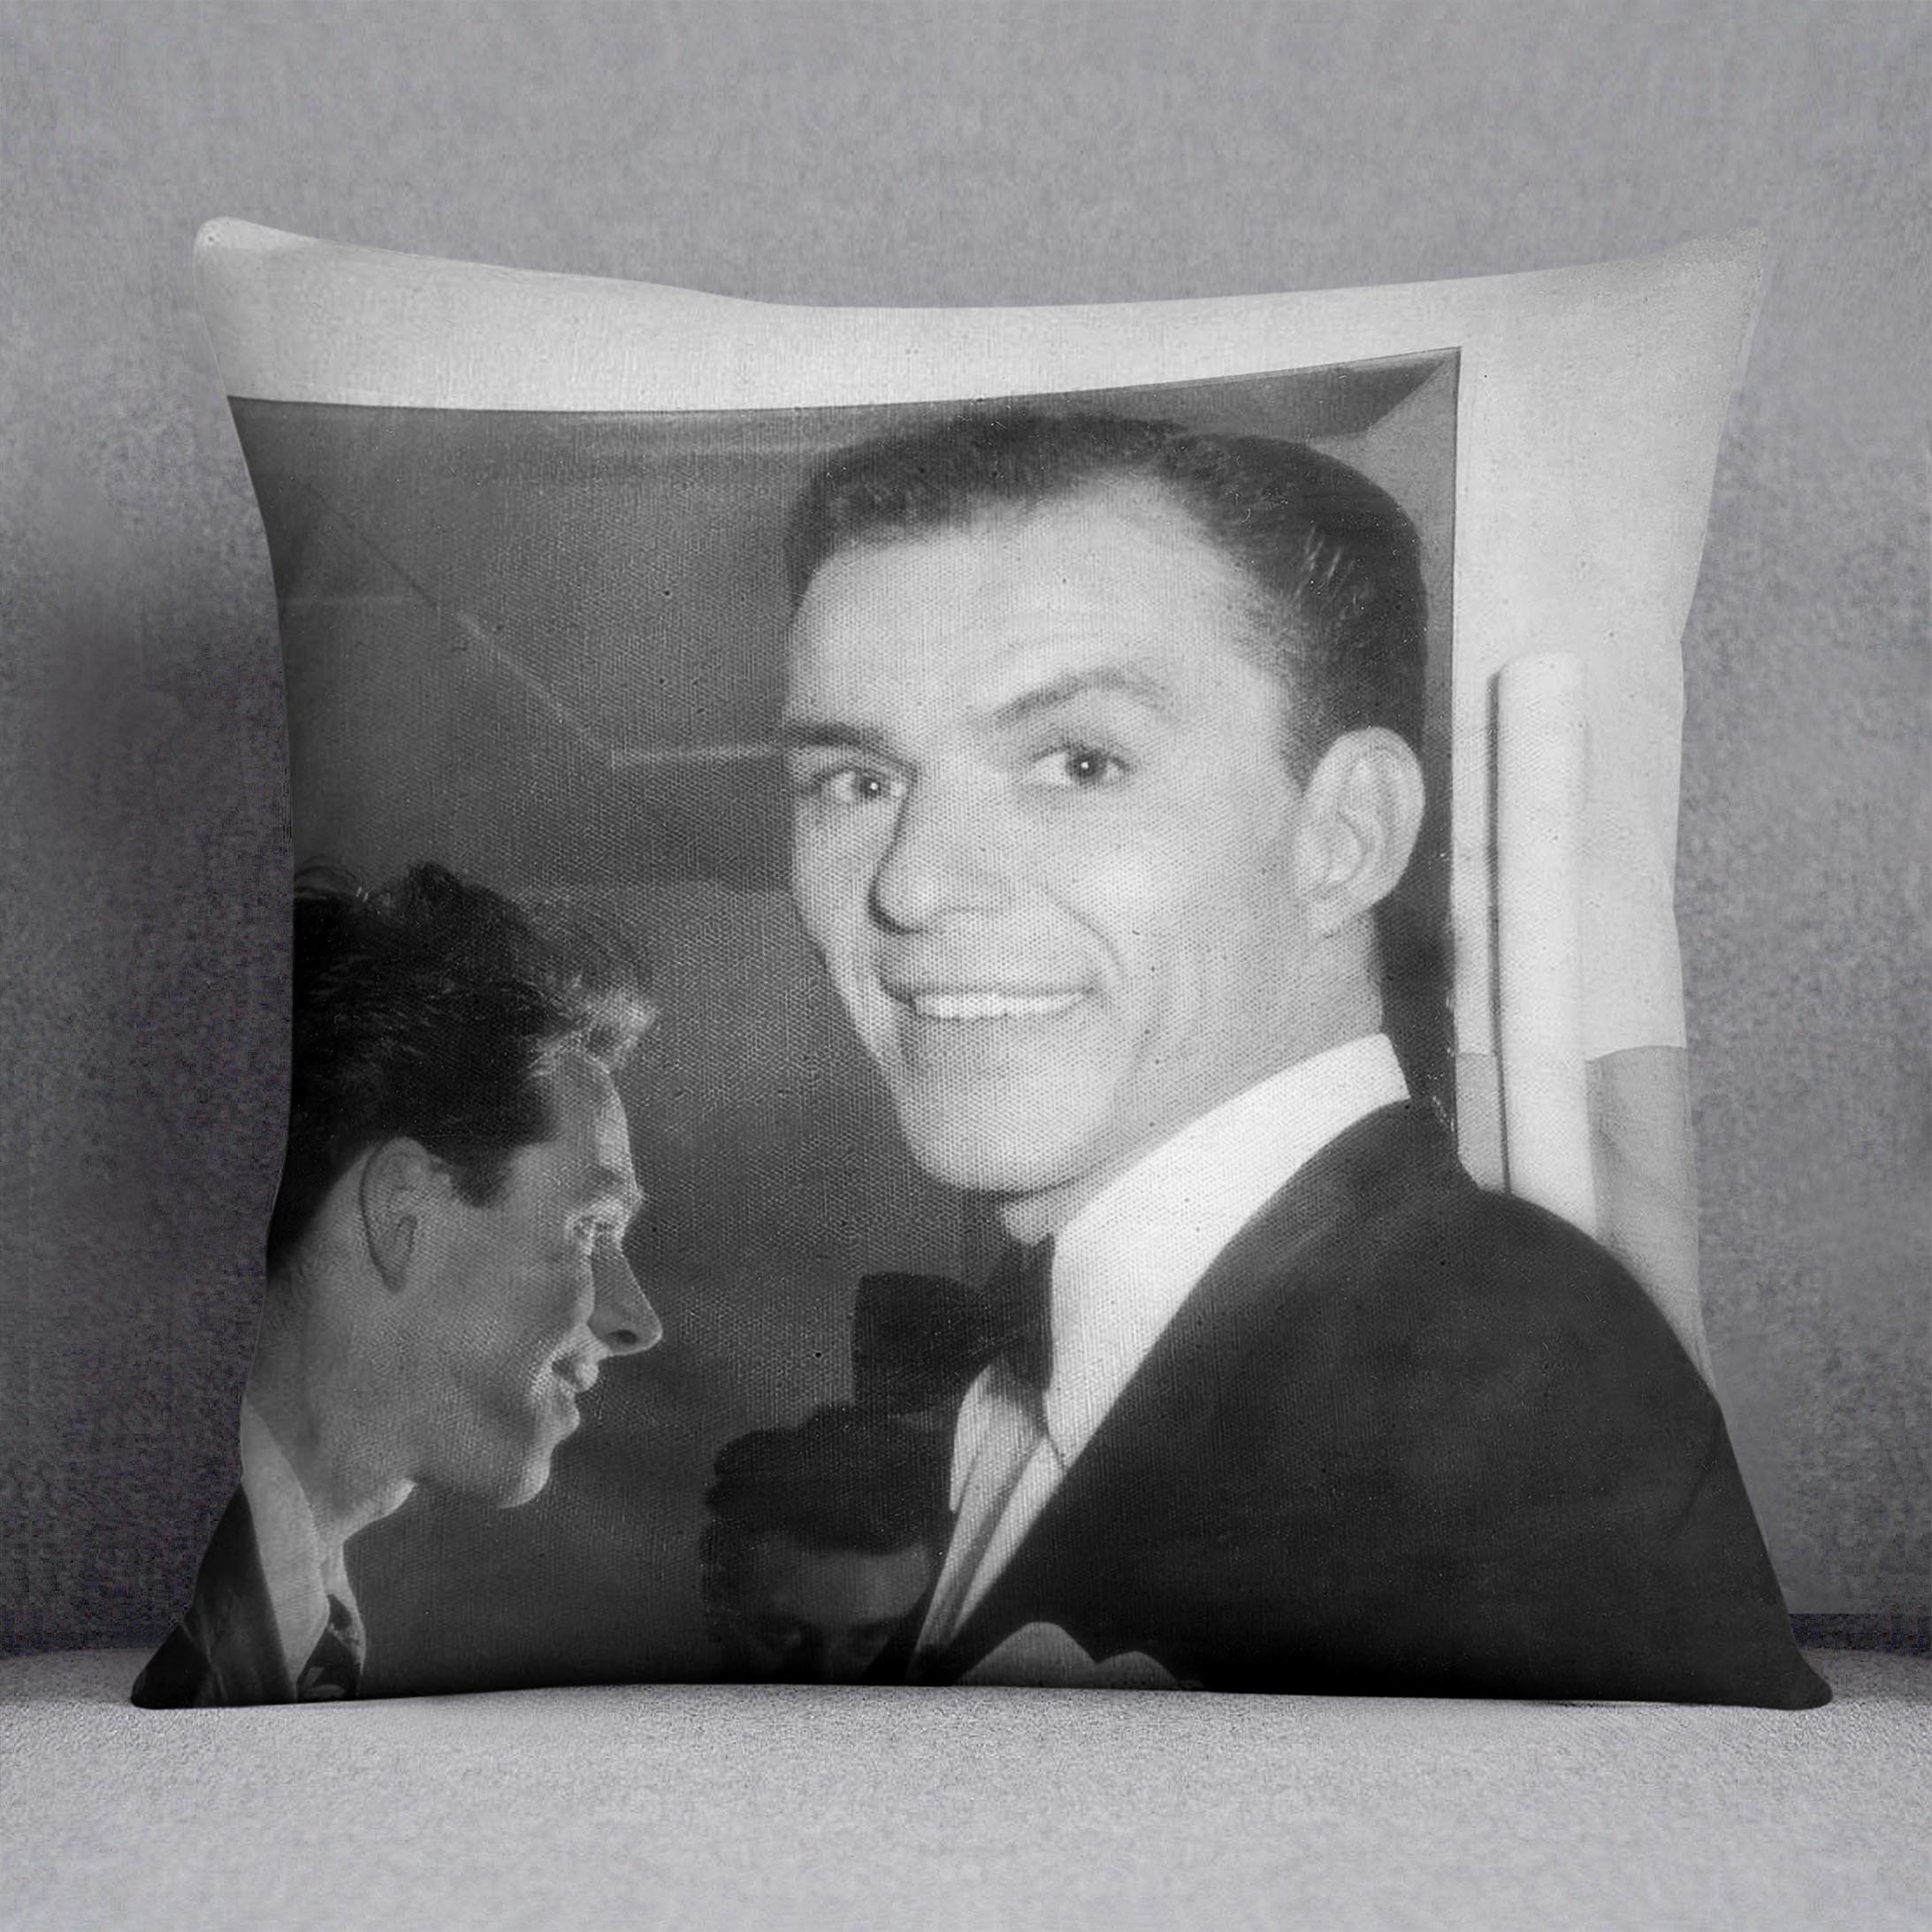 Frank Sinatra in 1950 Cushion